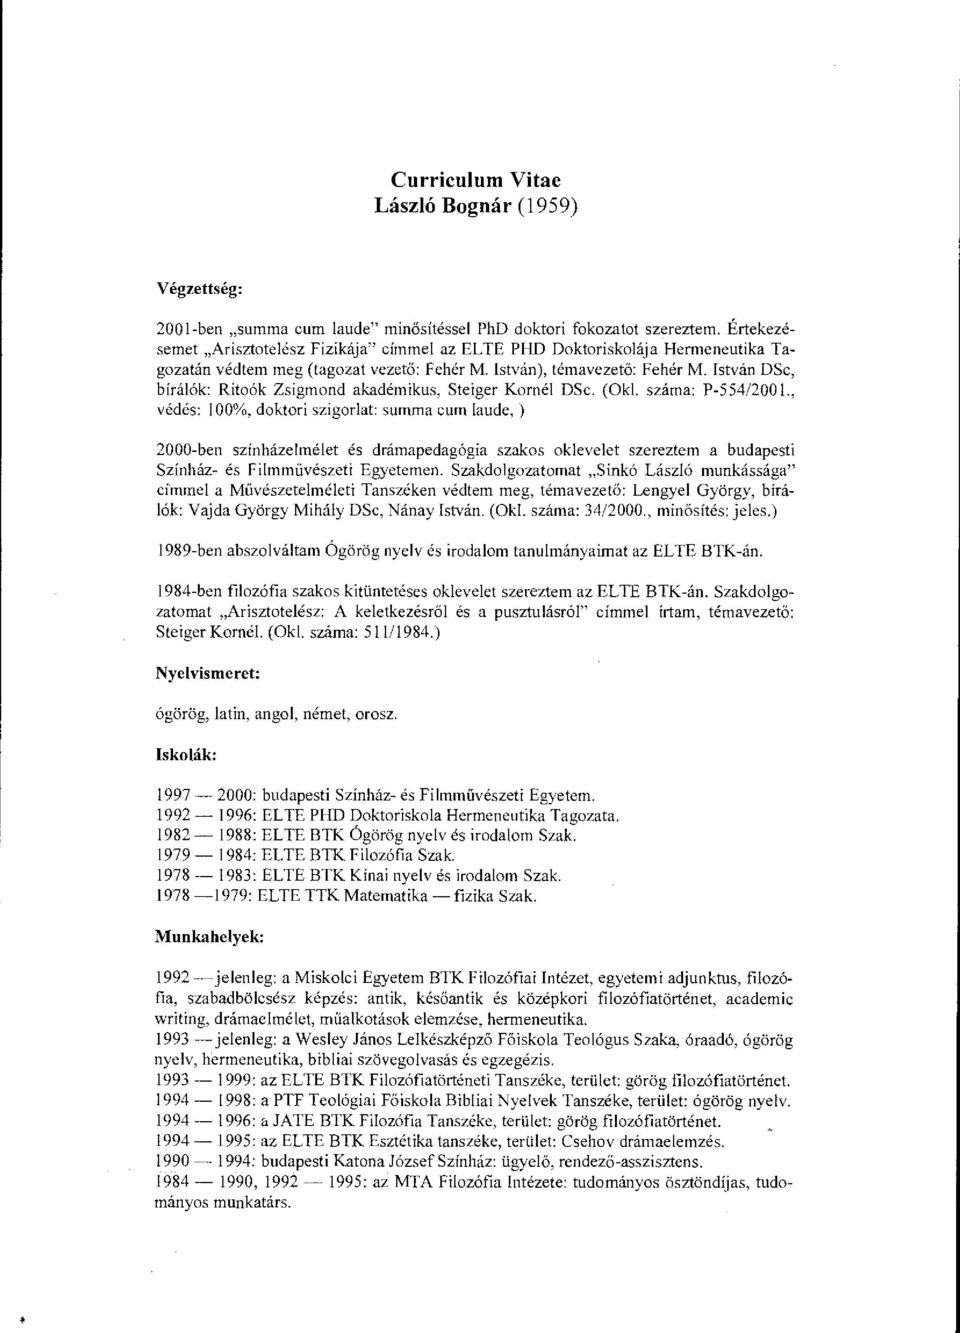 István DSc, bírálók: Ritoók Zsigmond akadémikus, Steiger Kornél DSc. (Okl. száma: P-554/2001.